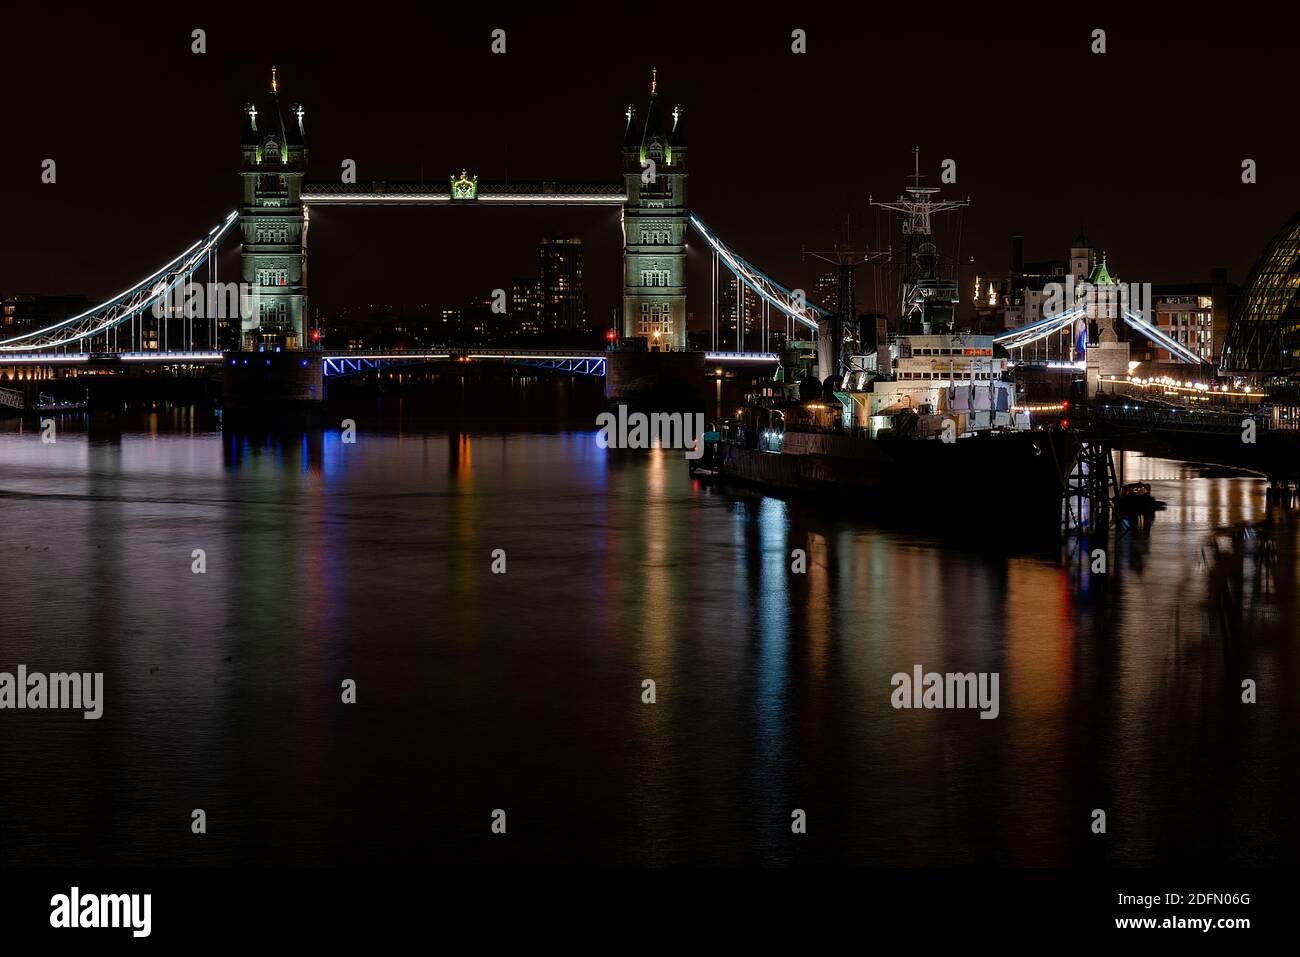 Londres, Royaume-Uni - 2020 janvier : paysage urbain nocturne avec HMS Belfast flottant sur la Tamise à côté de Tower Bridge. Exposition longue. Banque D'Images